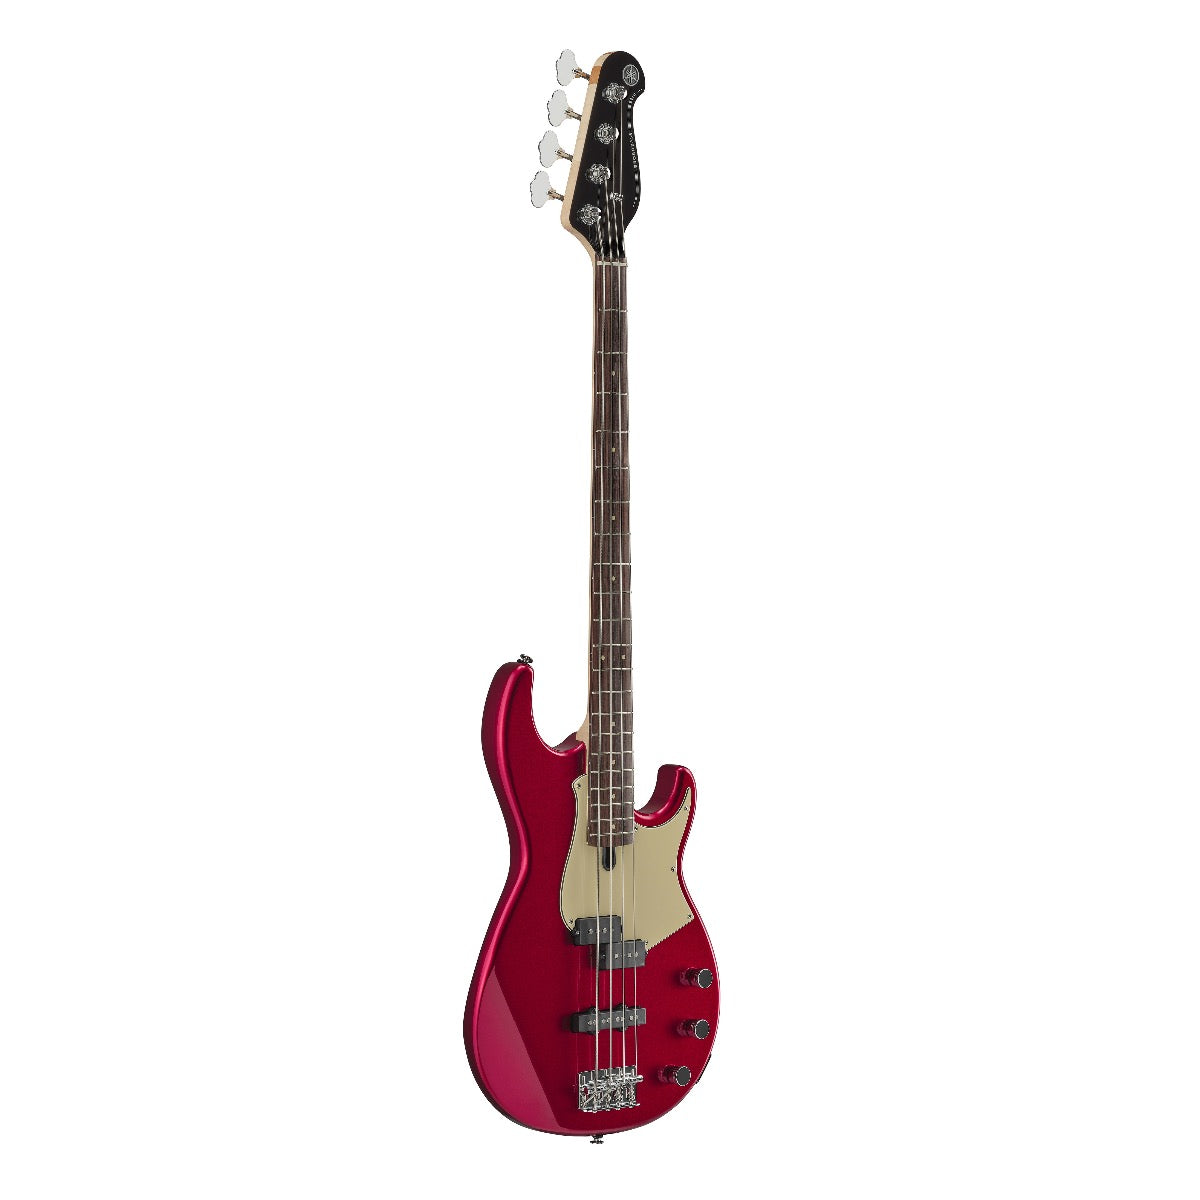 Yamaha BB434 Electric Bass Guitar - Red Metallic, View 5